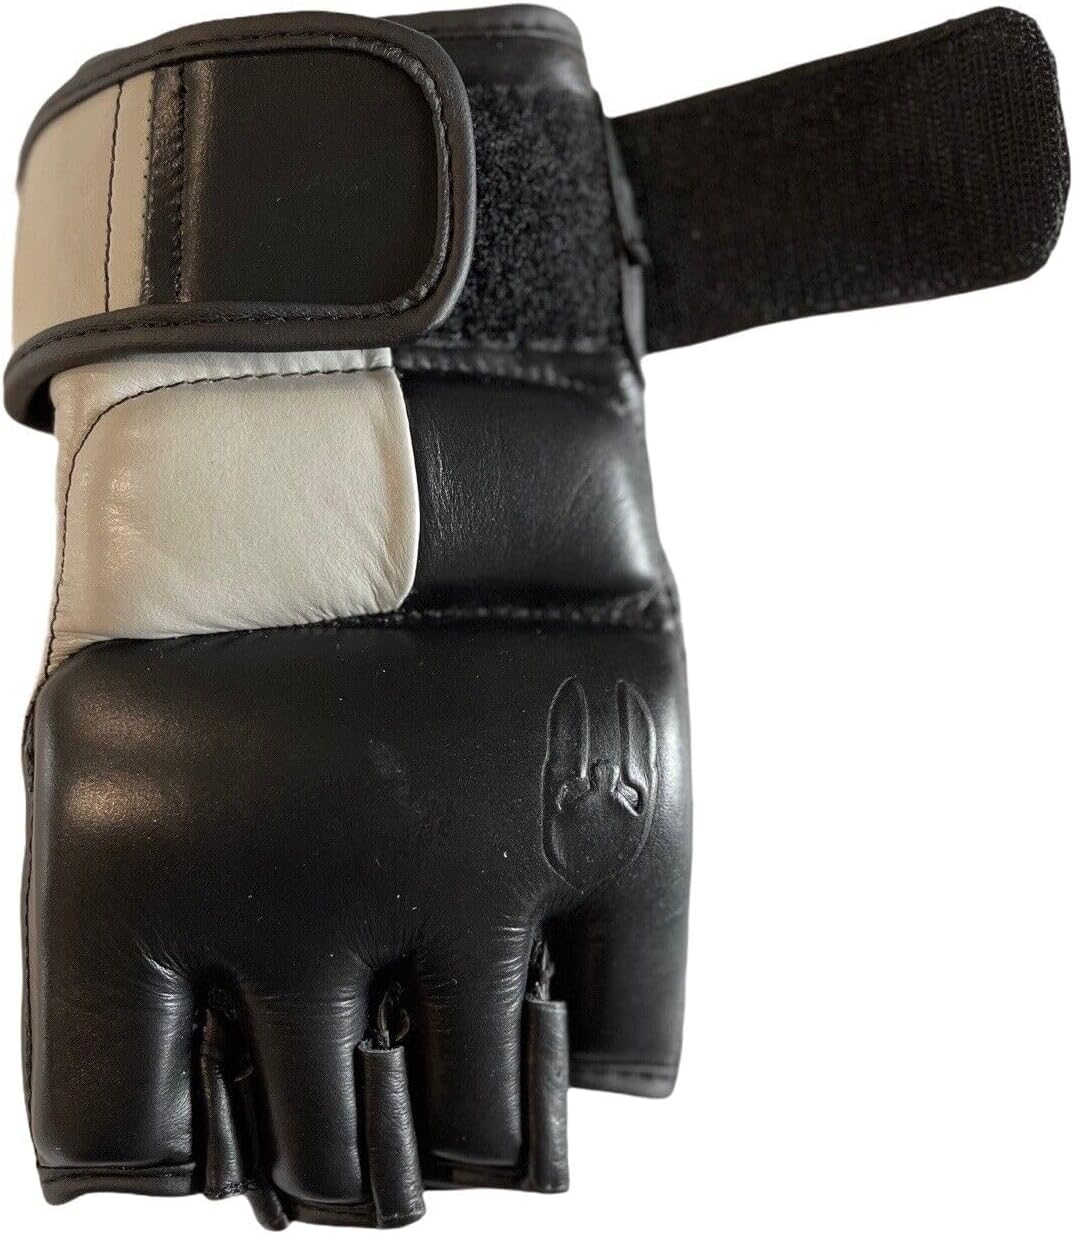 black-mma-gloves-for-men-and-women